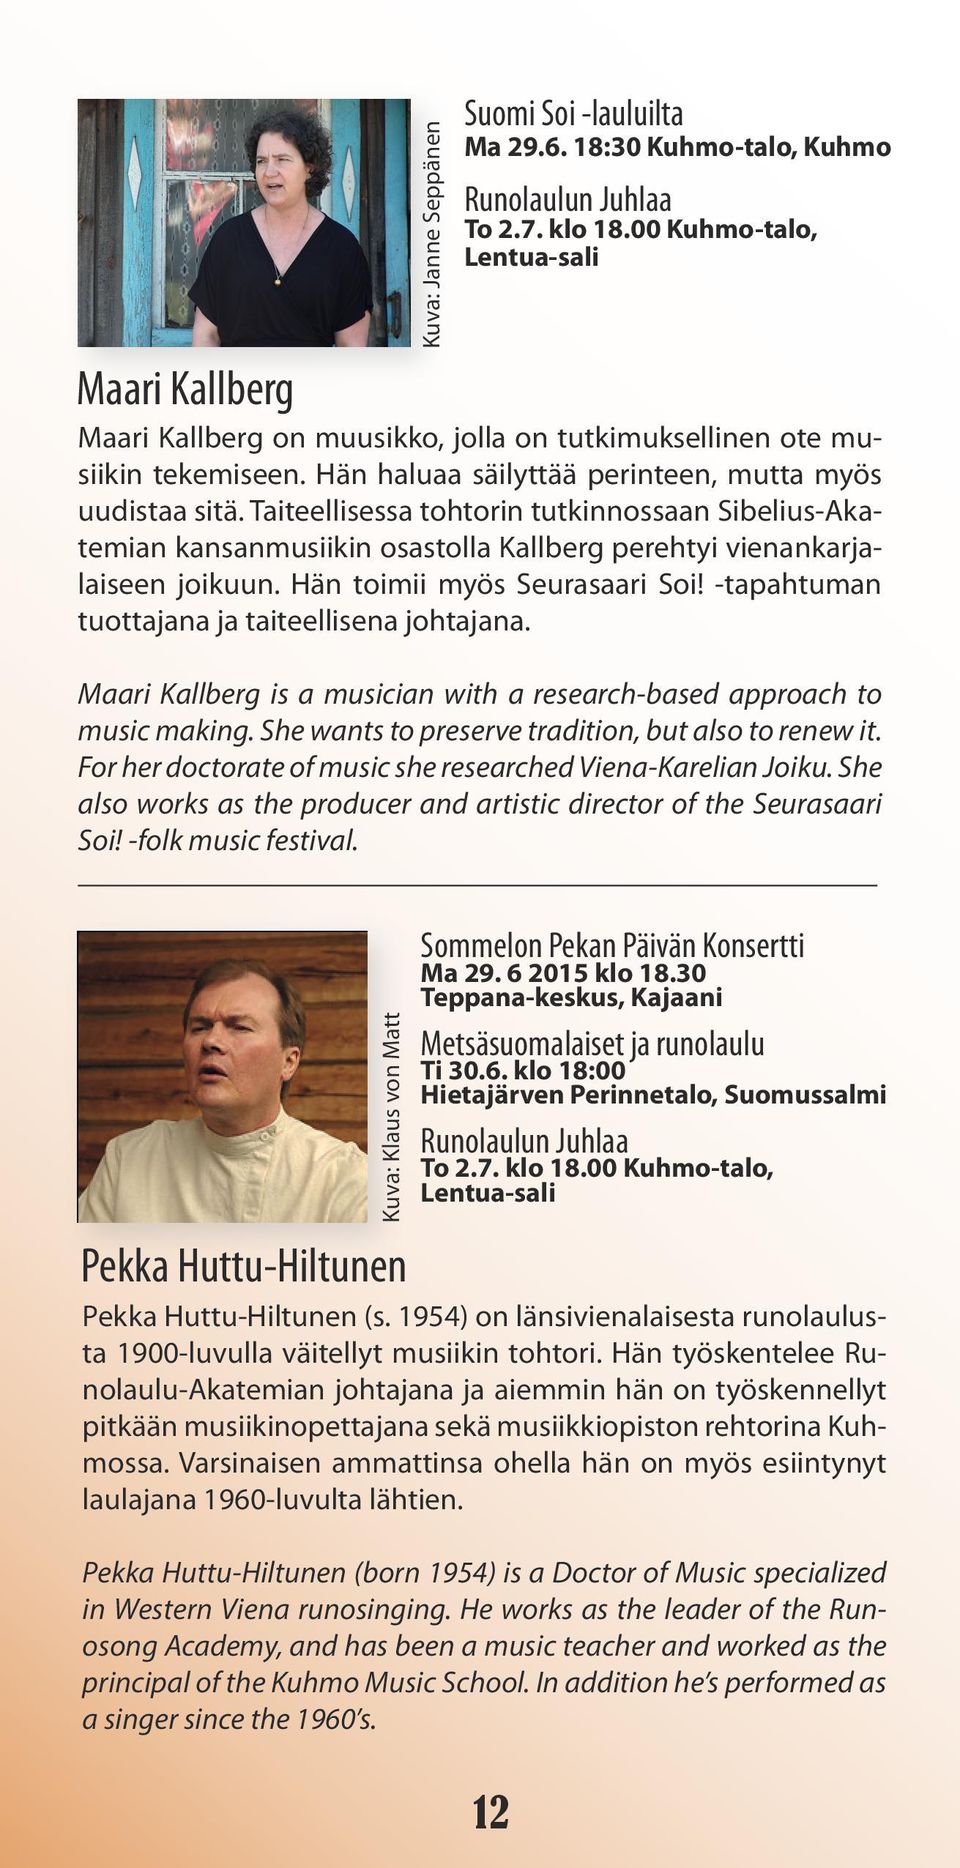 Taiteellisessa tohtorin tutkinnossaan Sibelius-Akatemian kansanmusiikin osastolla Kallberg perehtyi vienankarjalaiseen joikuun. Hän toimii myös Seurasaari Soi!